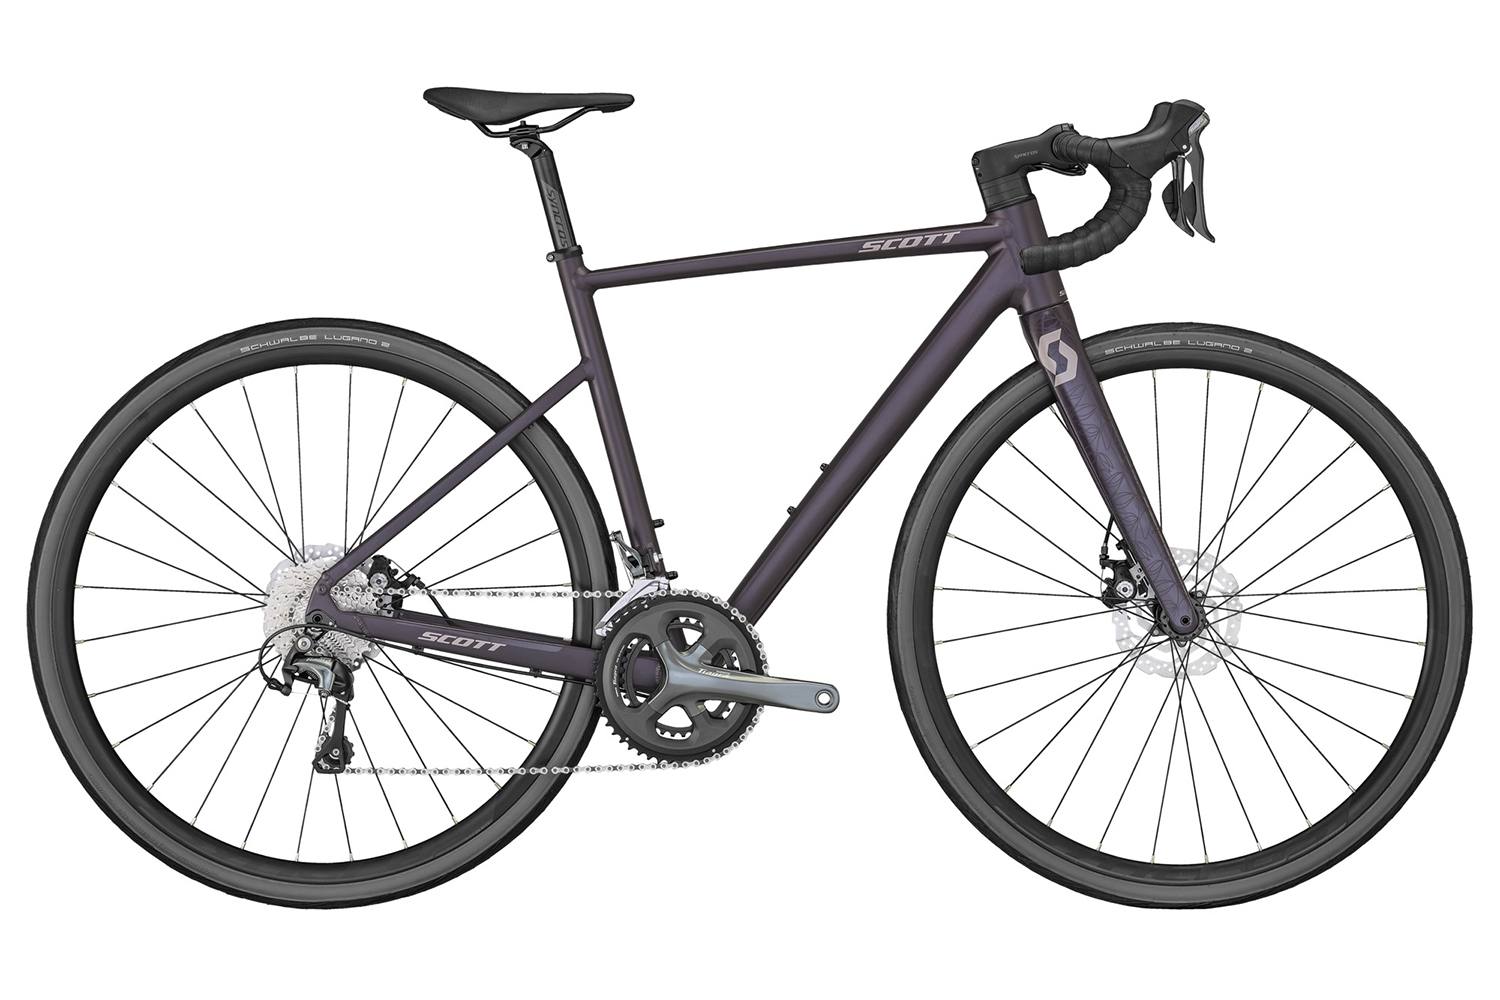  Отзывы о Женском велосипеде Scott Contessa Speedster 15 Disc 2022